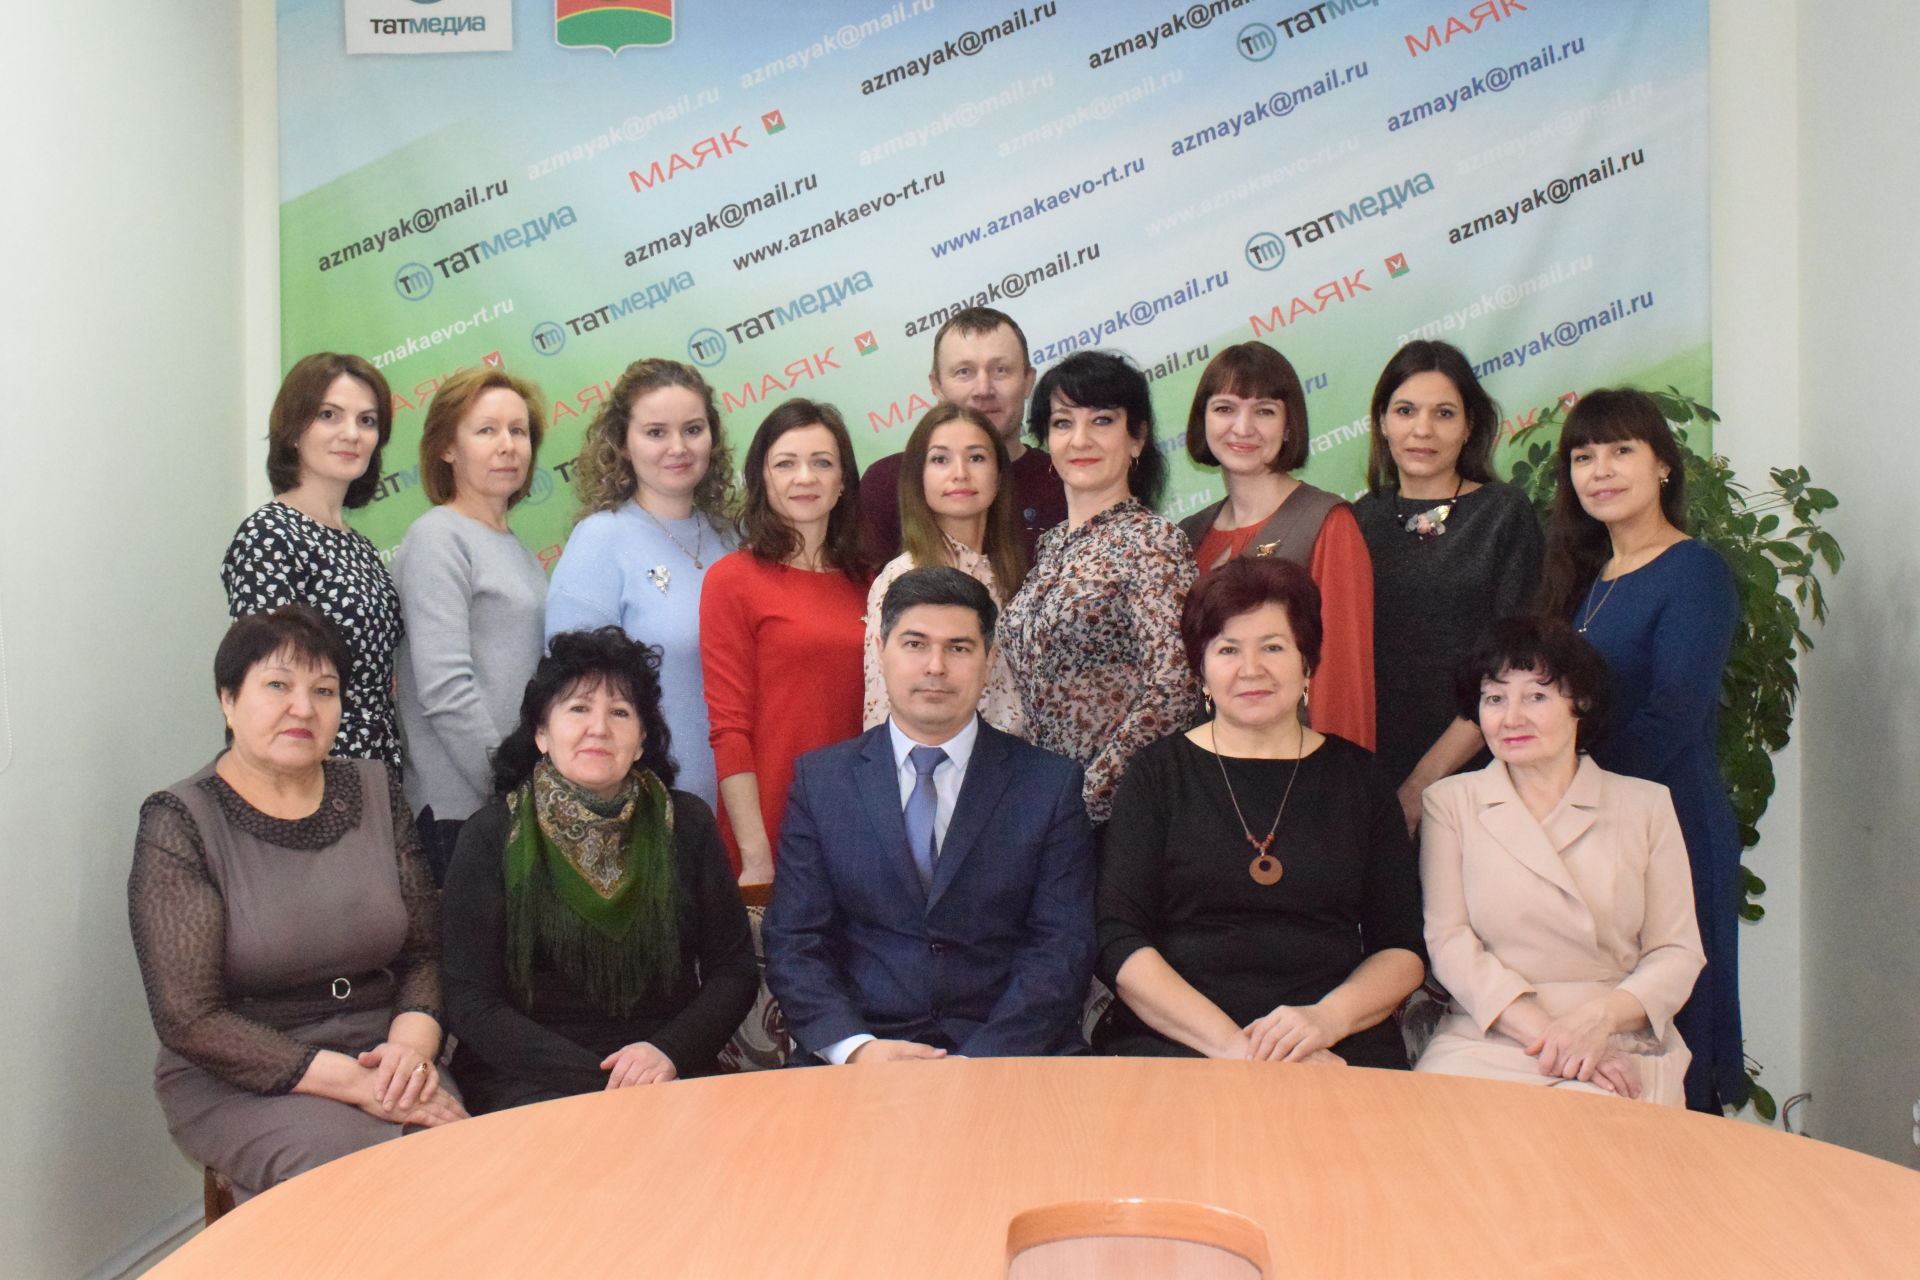 Главный редактор газеты «Маяк» поздравил коллег&nbsp;с Днем татарстанской печати